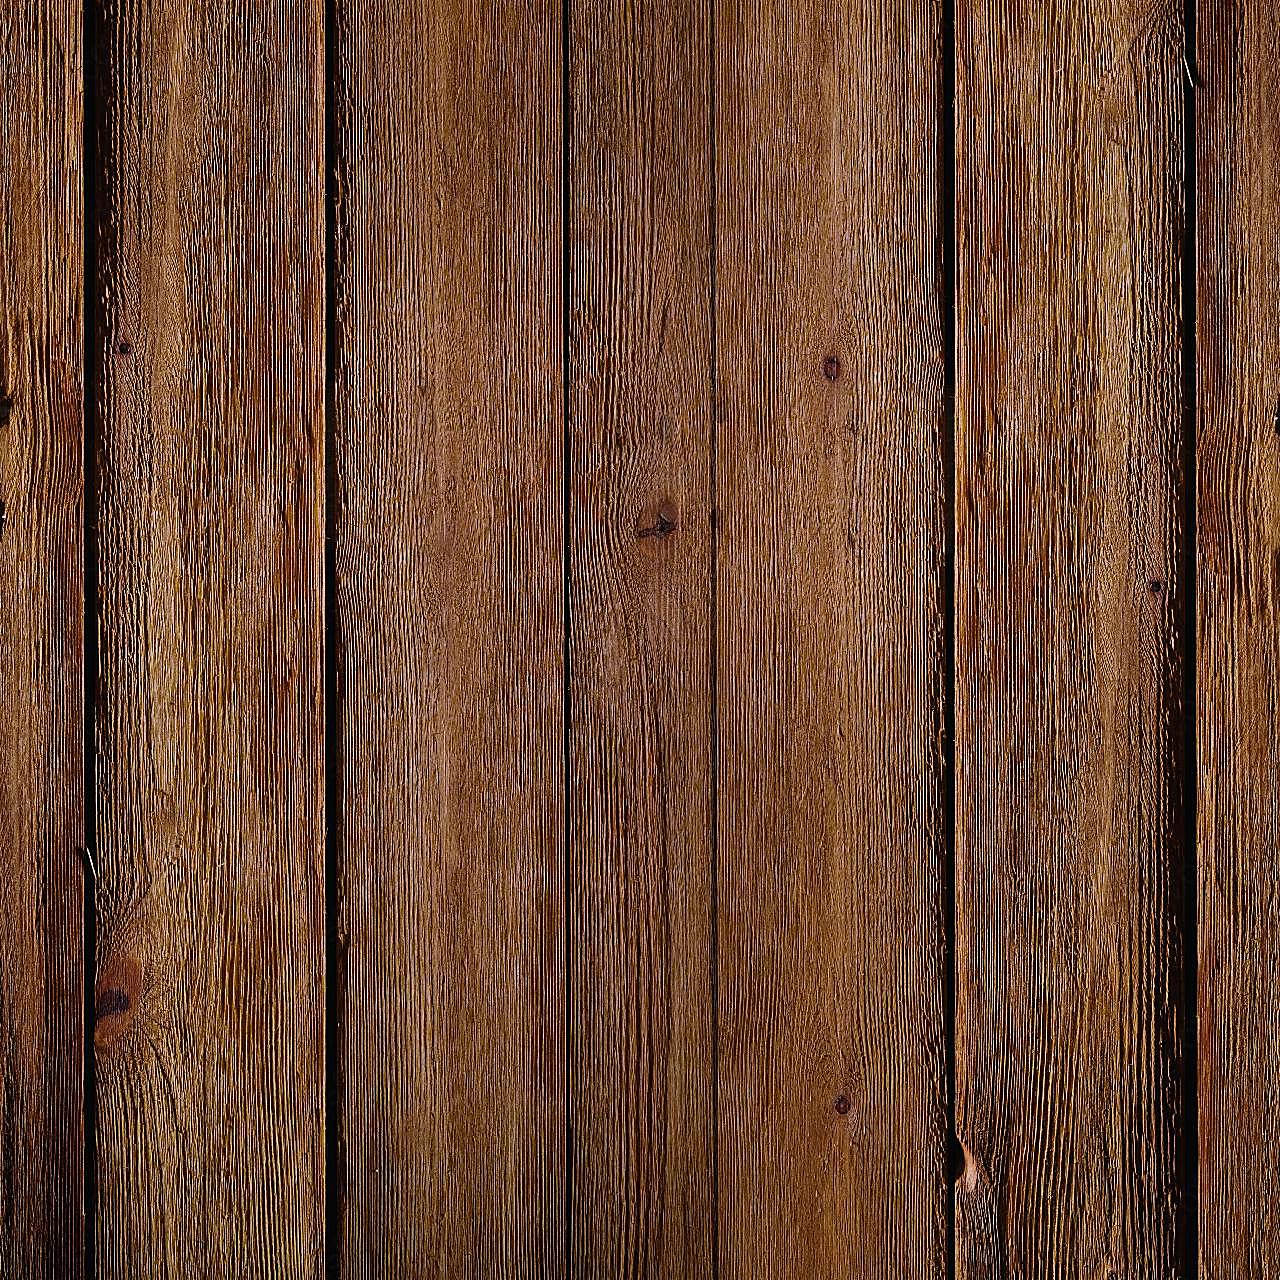 木头高清图片2边框摄影